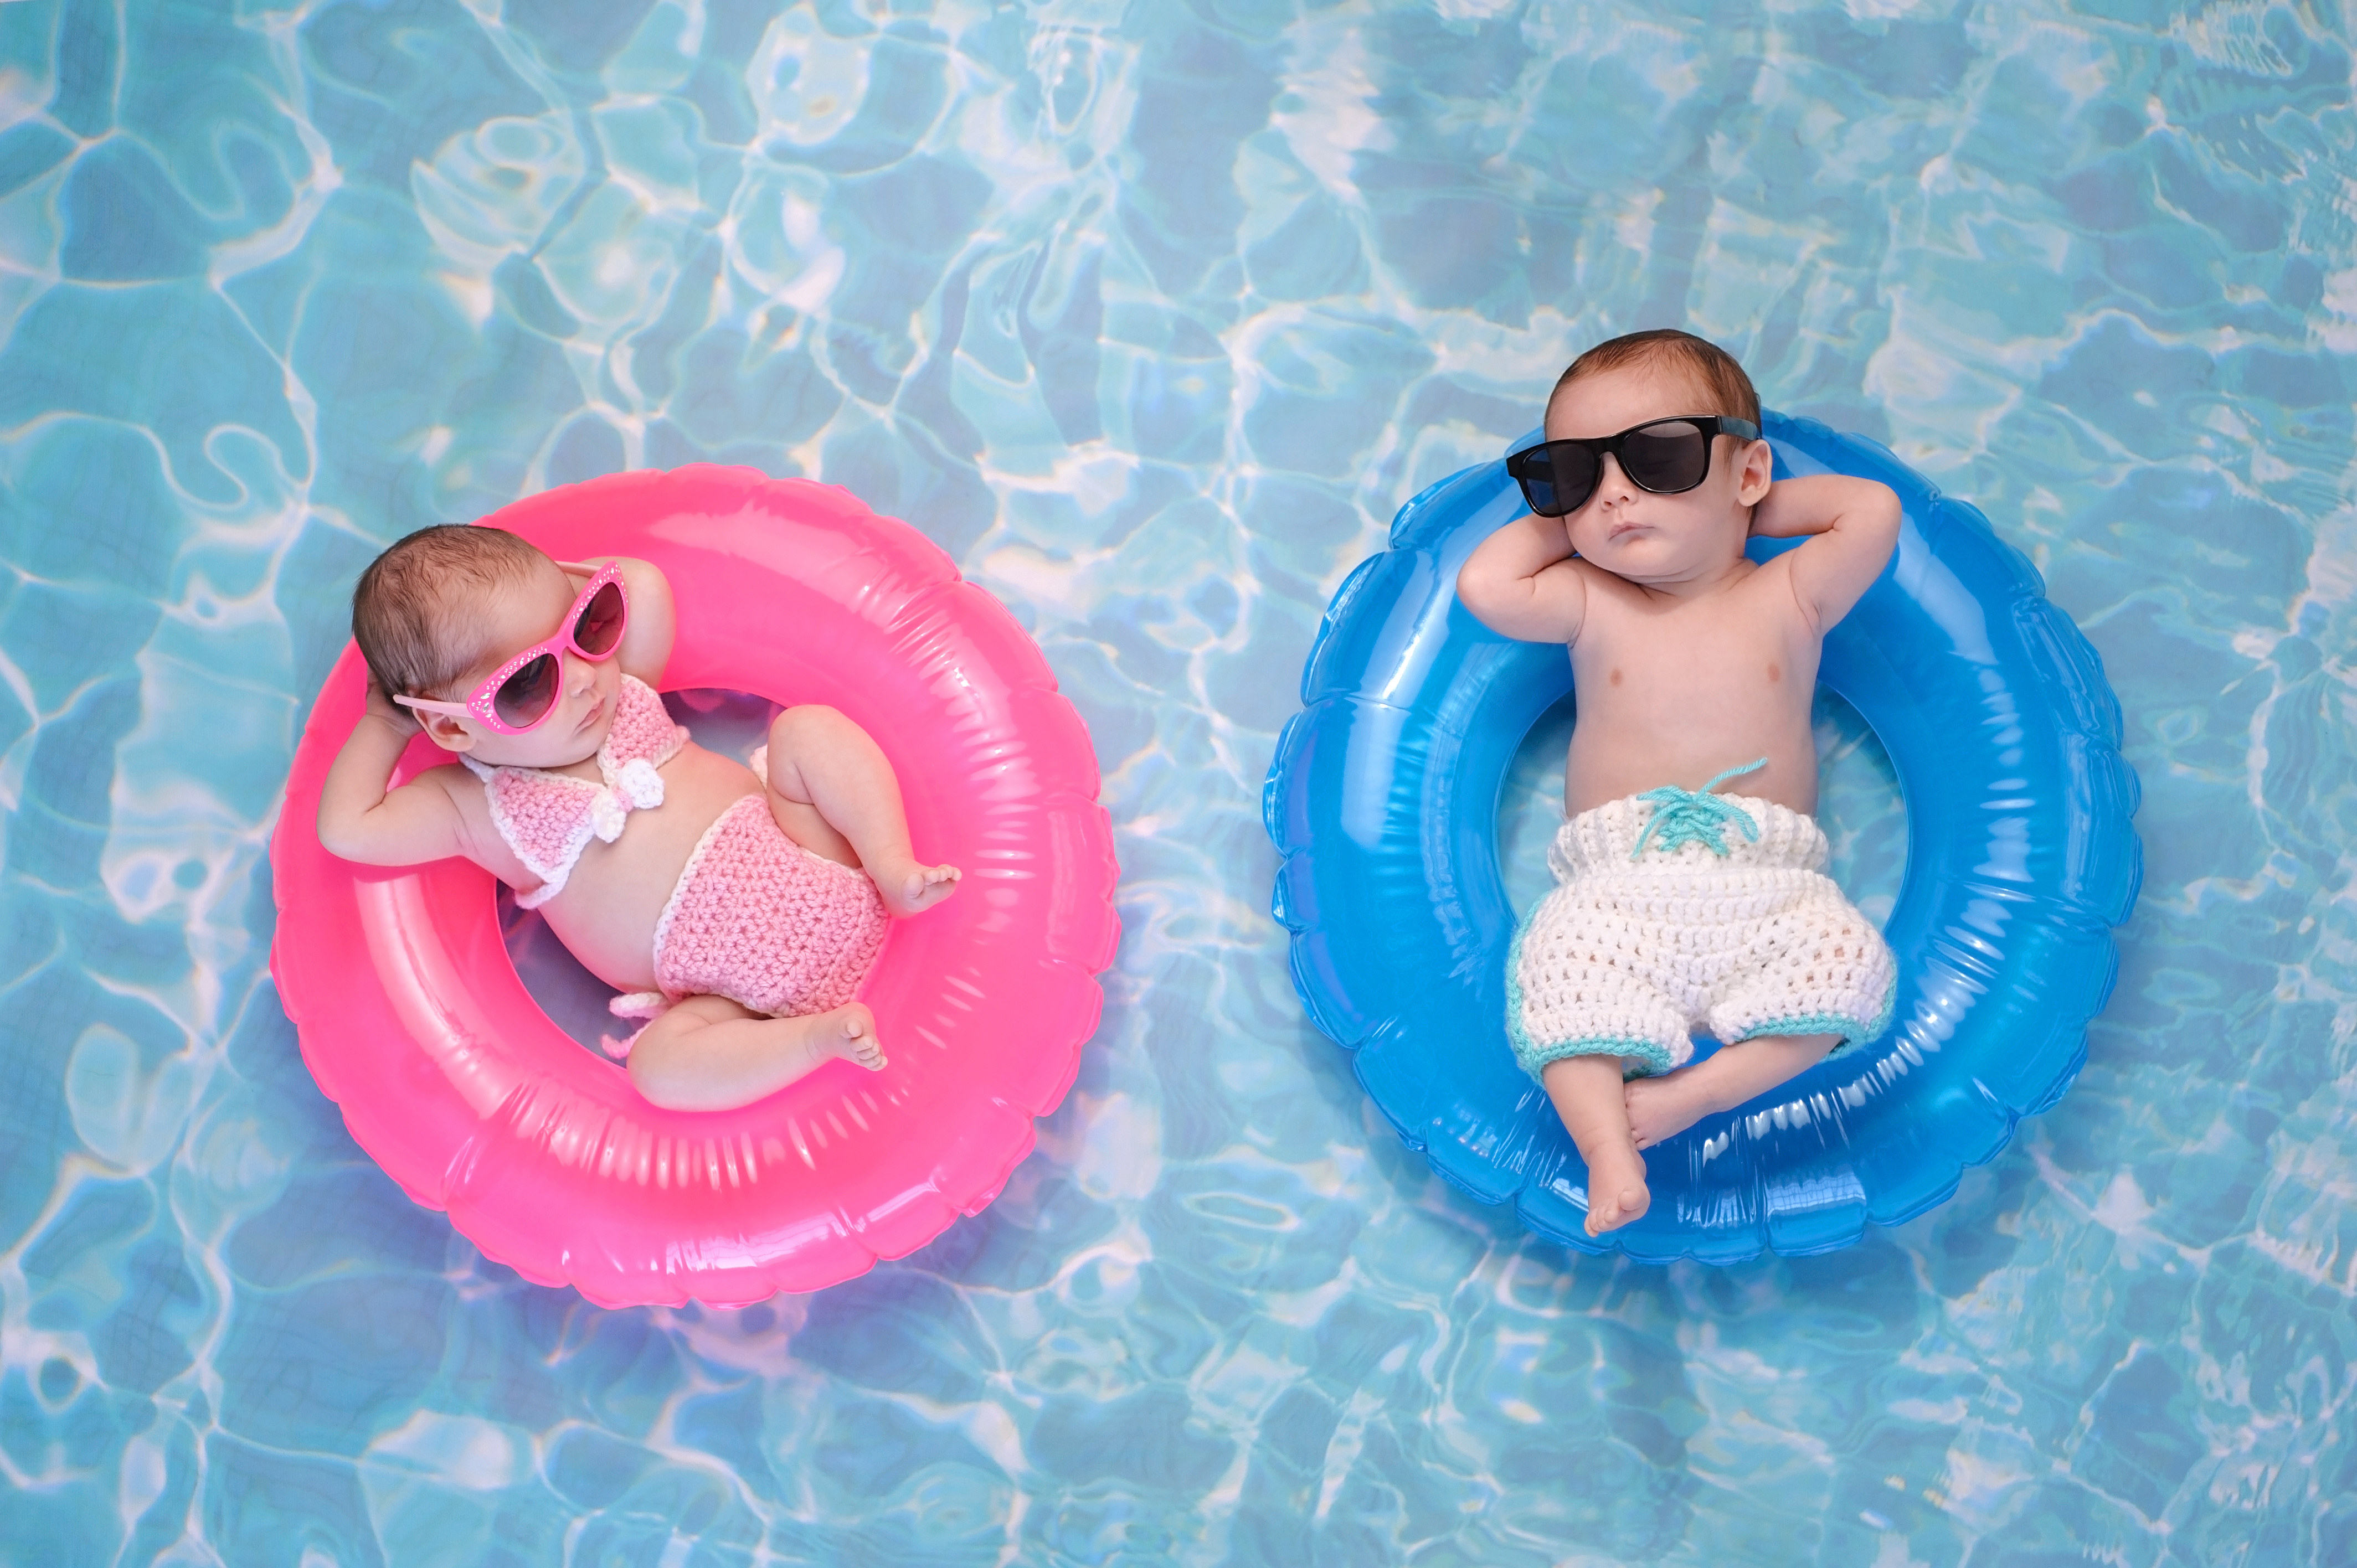 HLDGS Baby Mädchen Fashion Einteiler Badeanzug niedlich Bedruckt Alter 3-36 Monate schulterfrei Bademode für Poolside Party Schwimmtraining